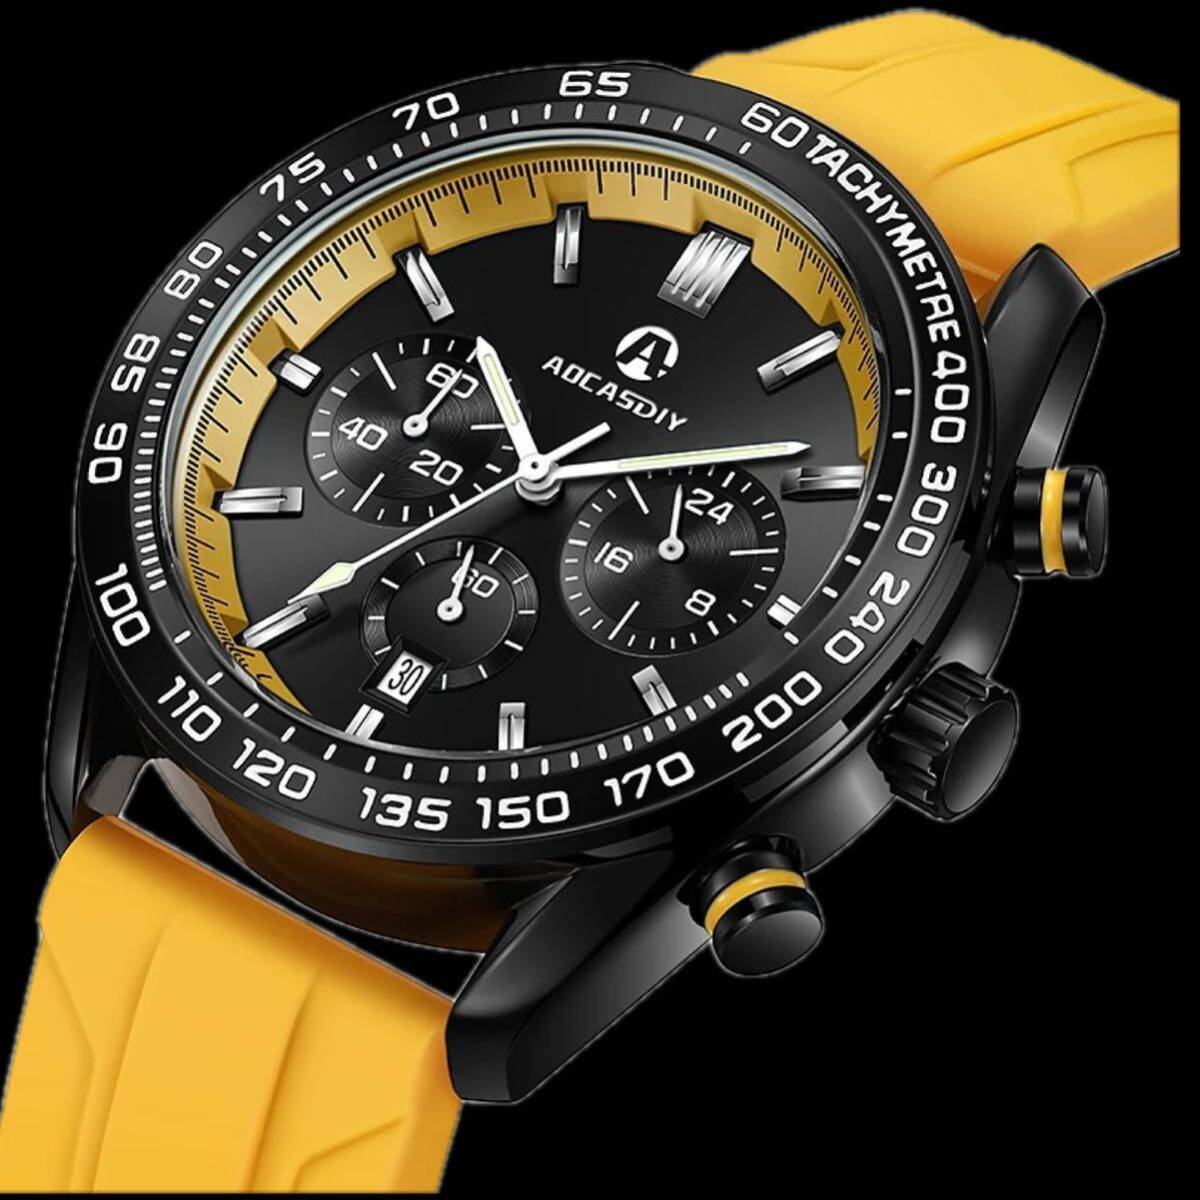 新品 AOCASDIY オマージュクロノグラフウォッチ ラバーストラップ メンズ腕時計 イエロー A2996_画像2